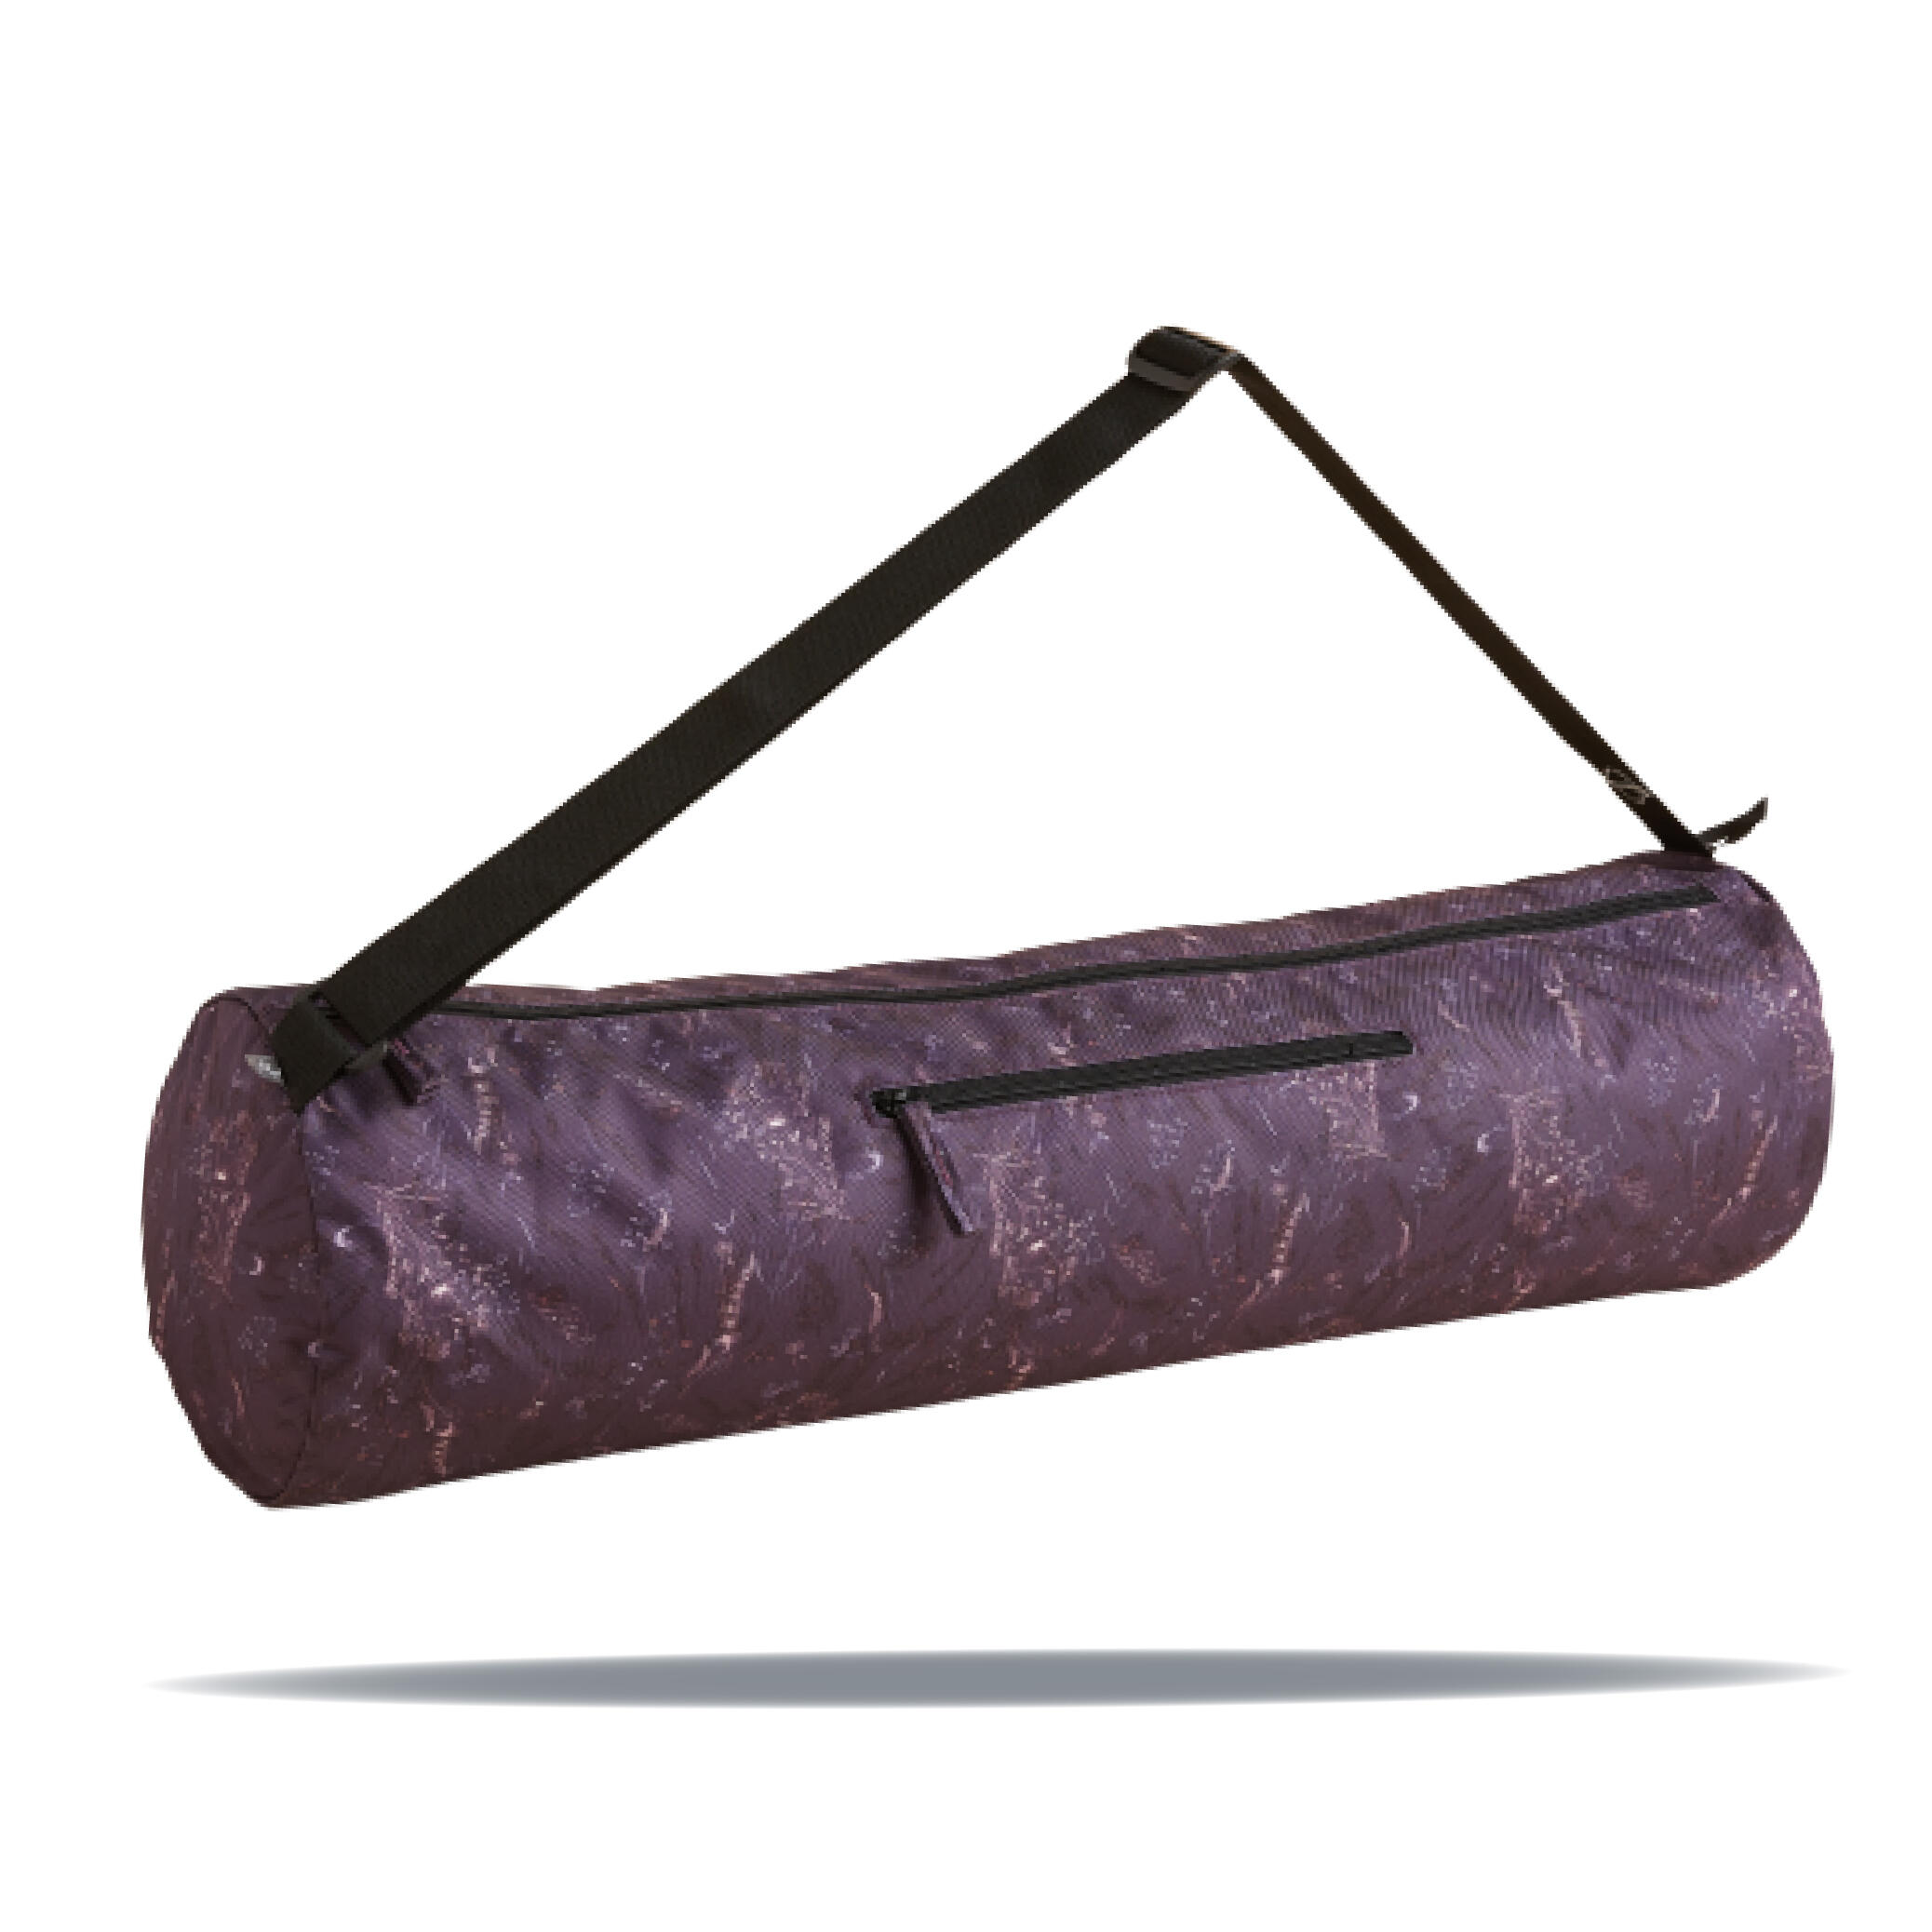 Buy Yoga Mat Bags online